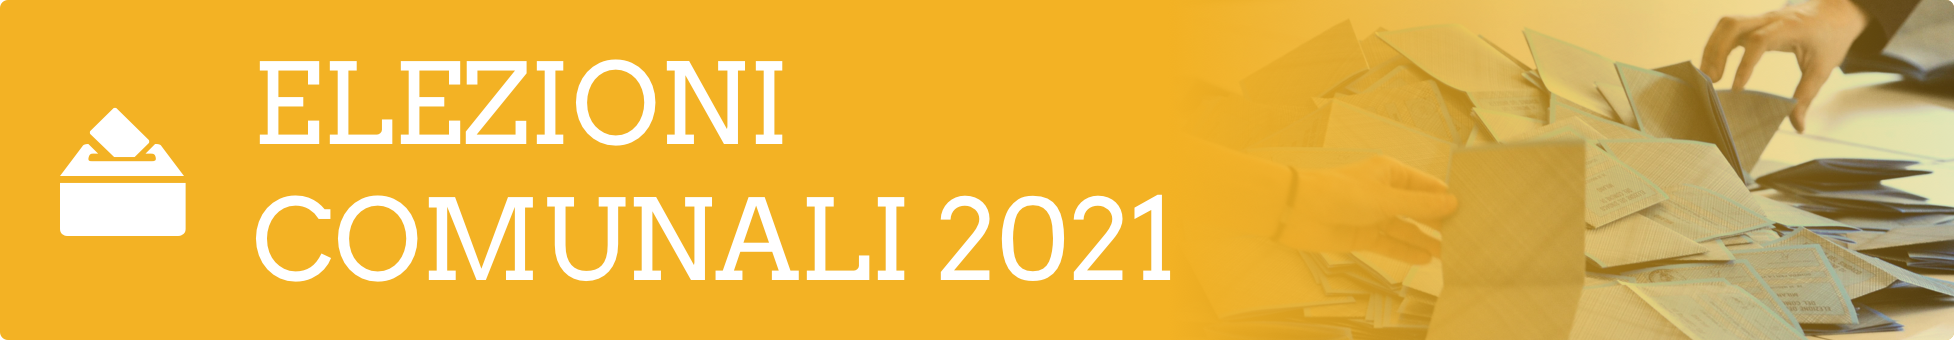 Elezioni 2021